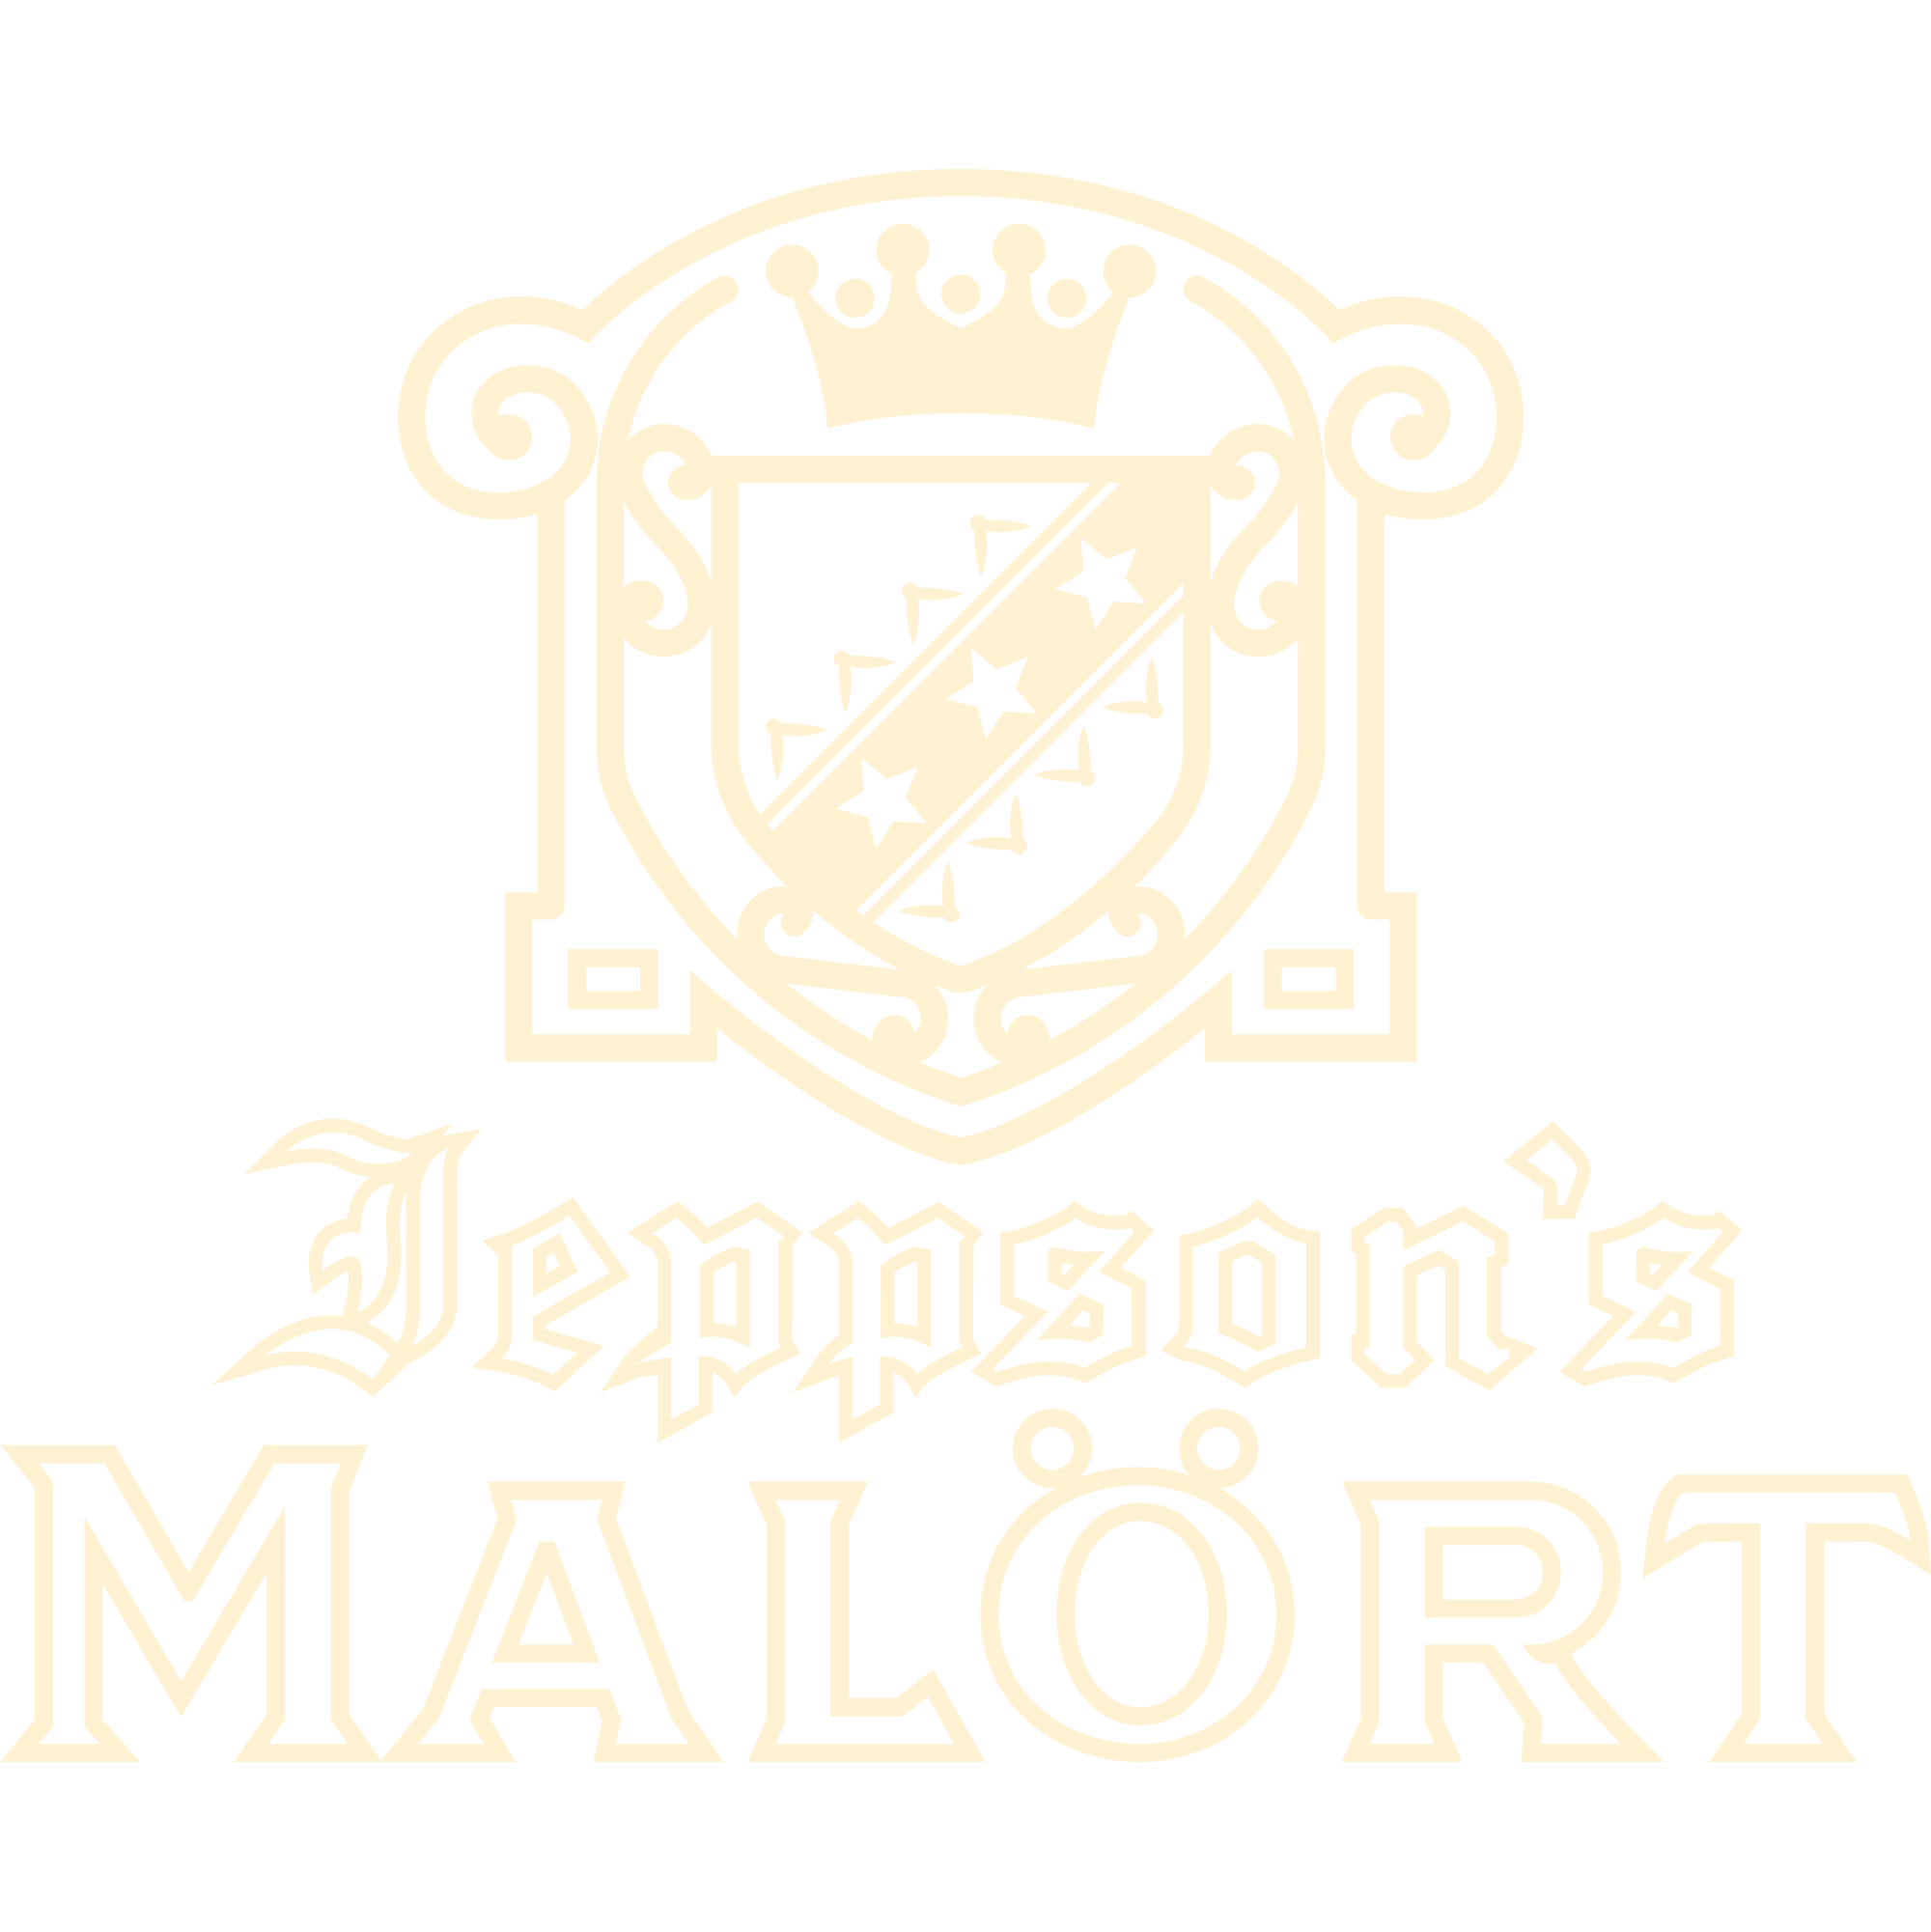 Malort logo tan